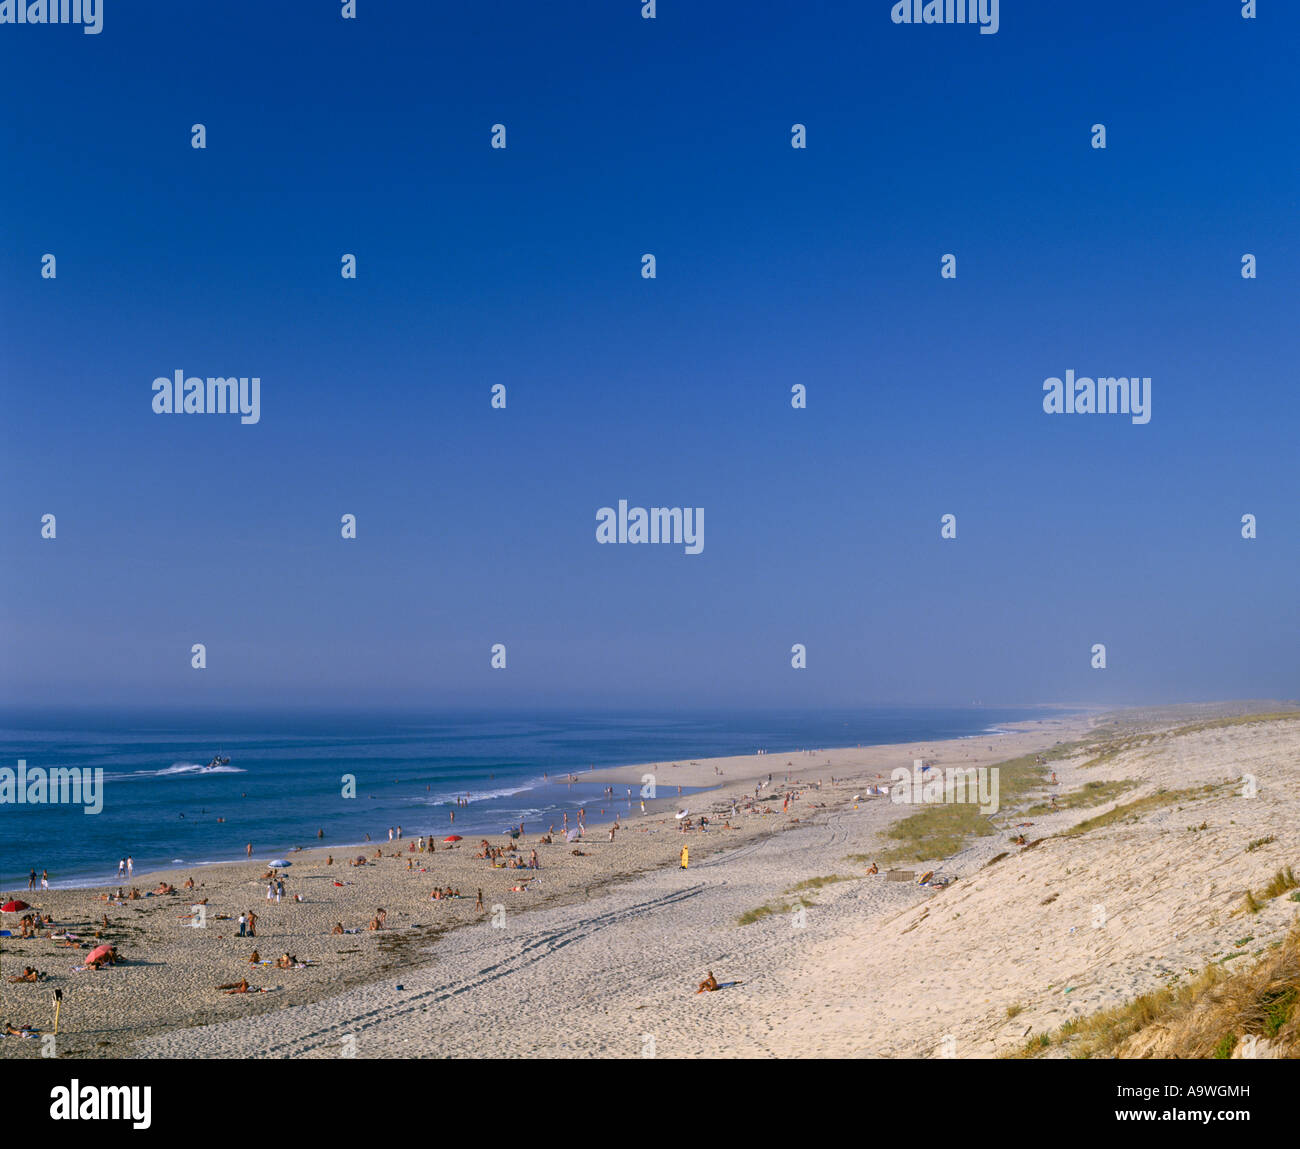 Plage sur l'océan Atlantique à Biscarrosse Plage où le nudisme est courante  Landes France Aquitaine Photo Stock - Alamy